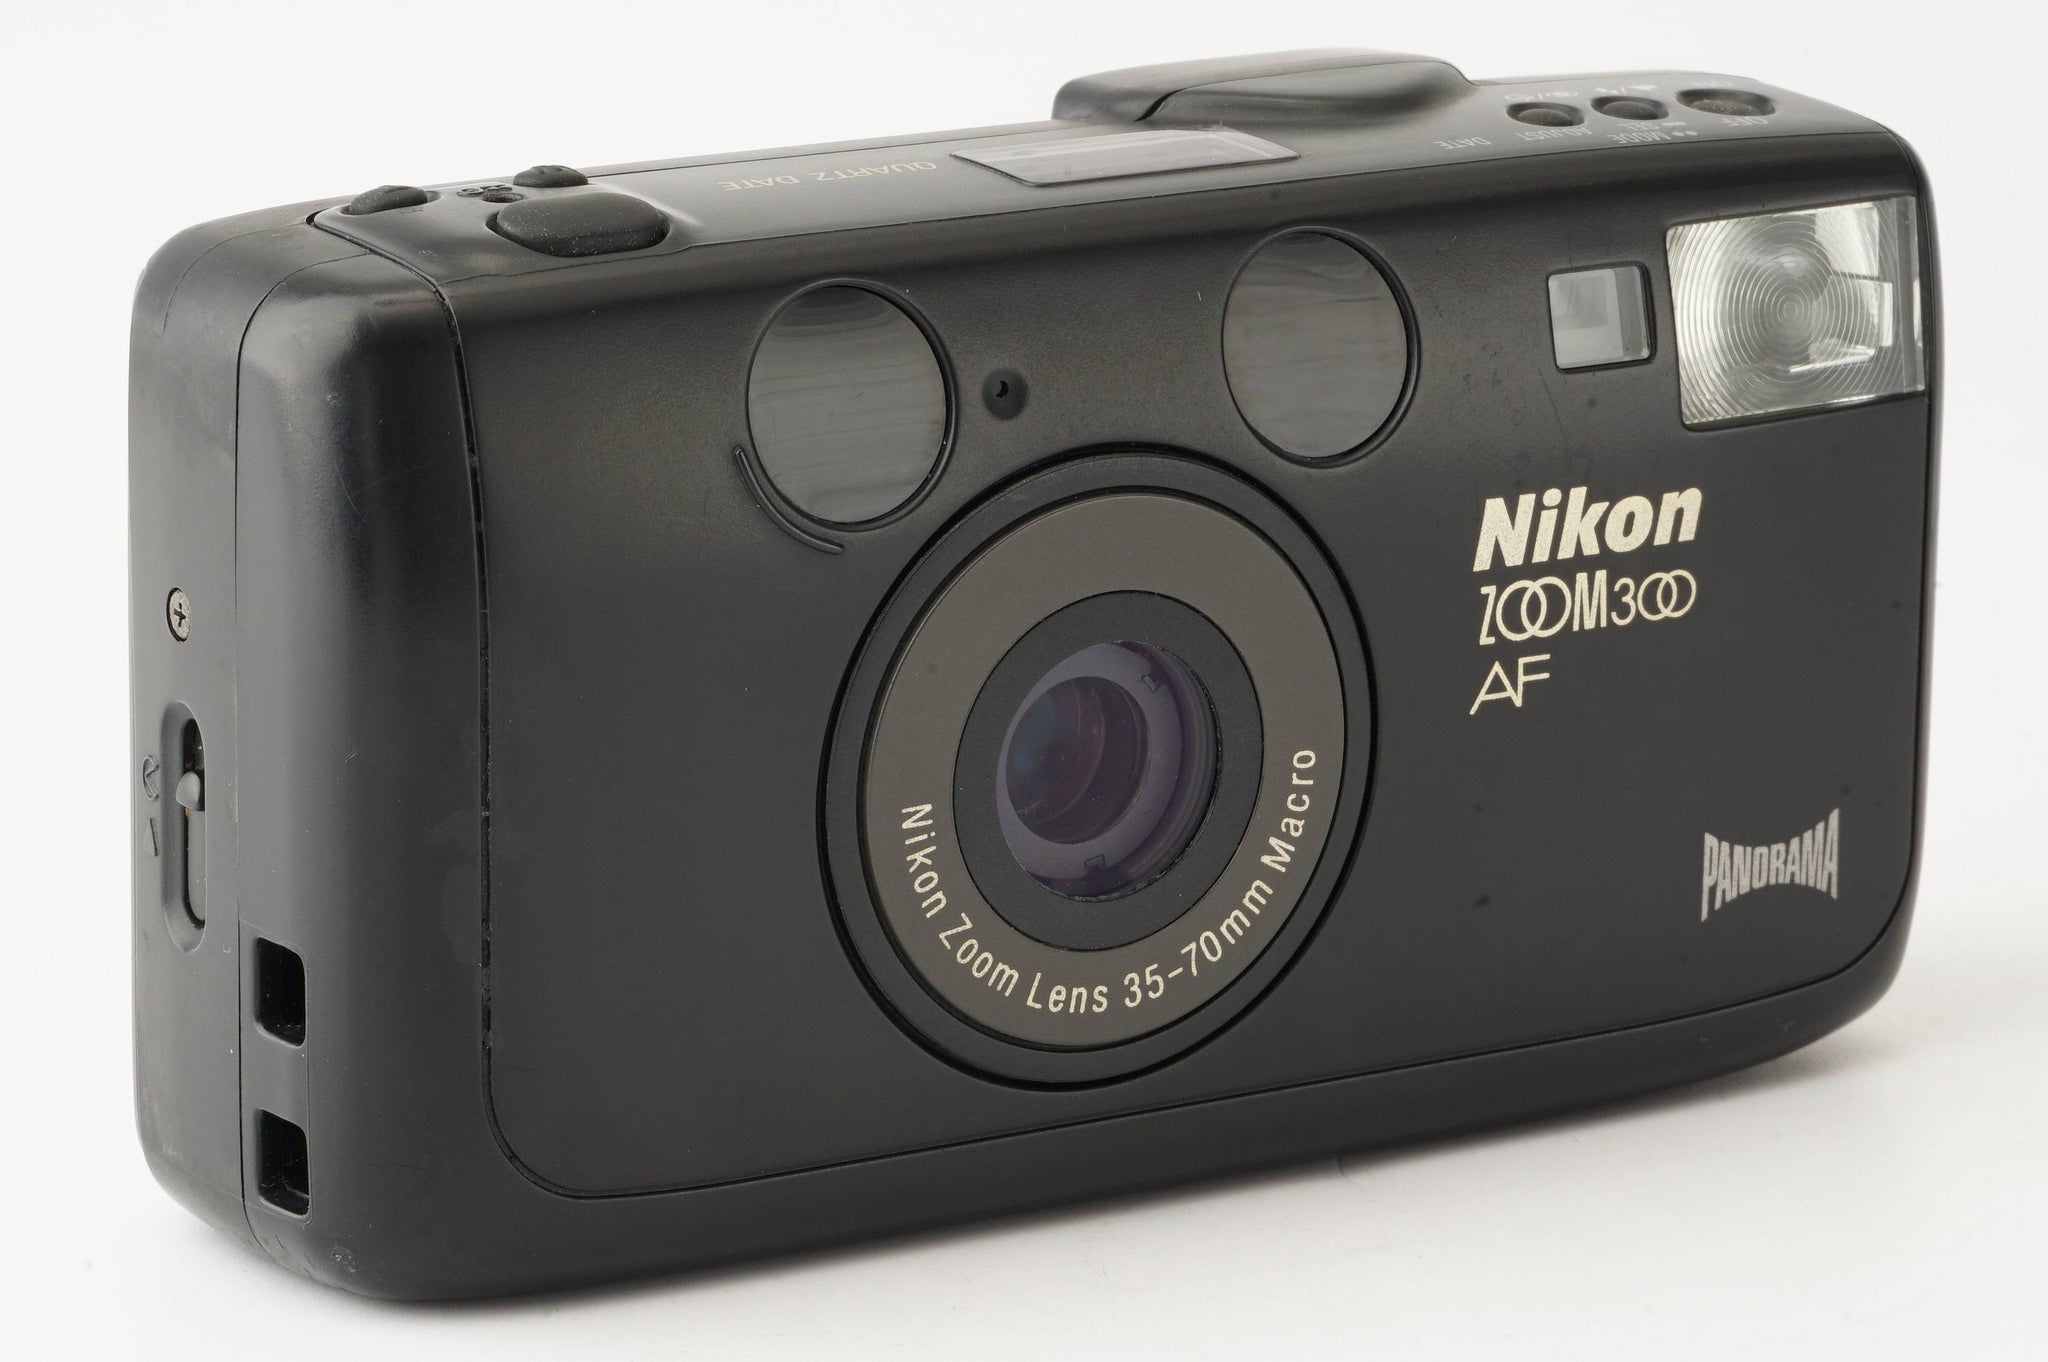 ★特選品★ Nikon ニコン ZOOM 300 AF PANORAMA